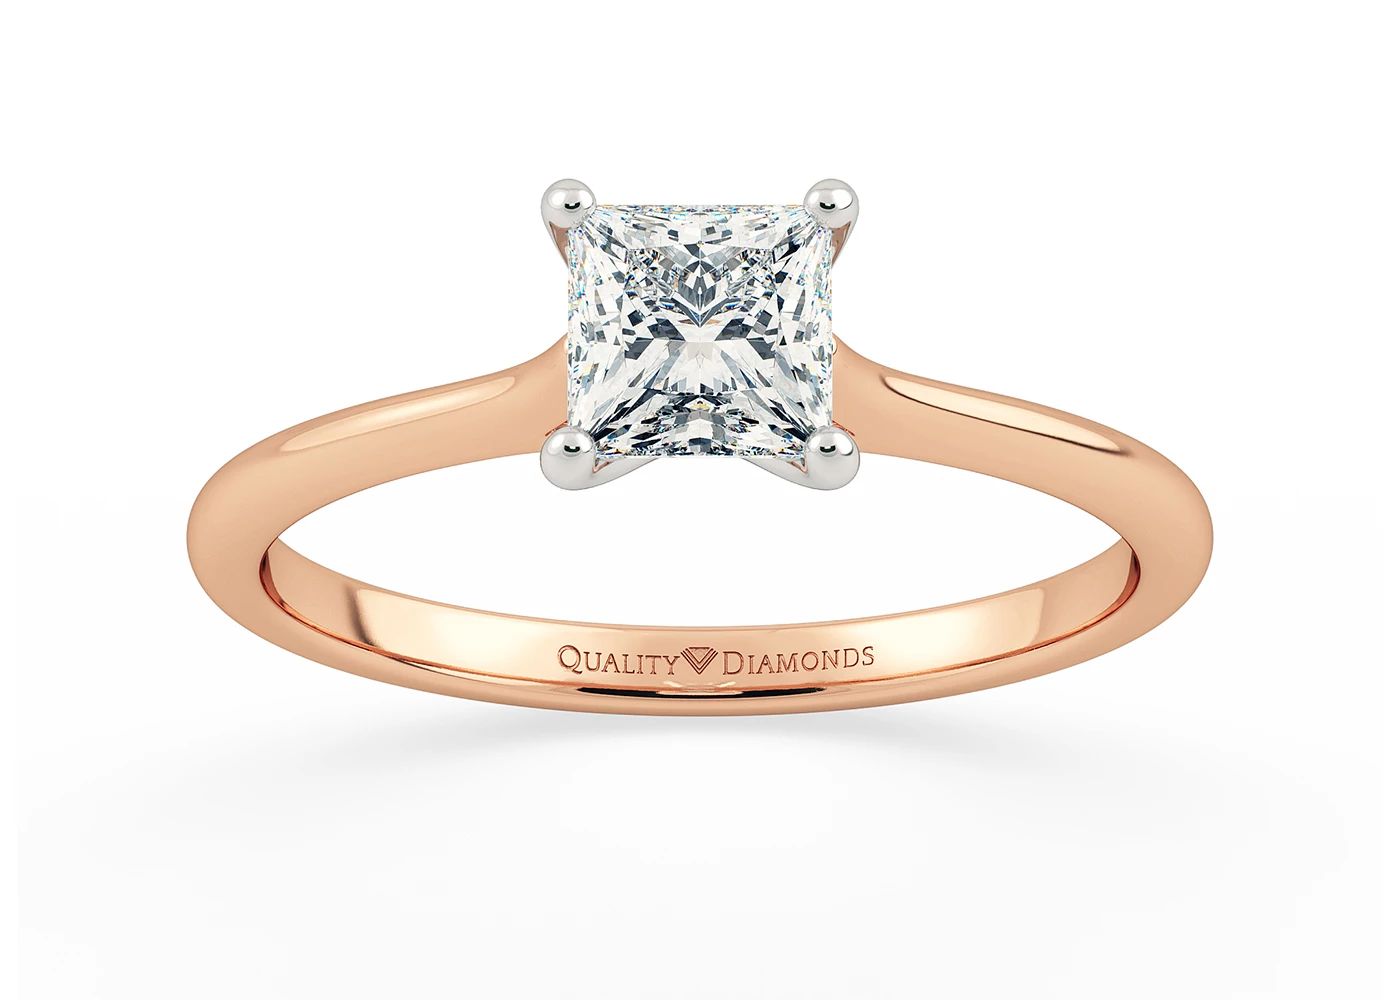 Princess Adamas Diamond Ring in 18K Rose Gold